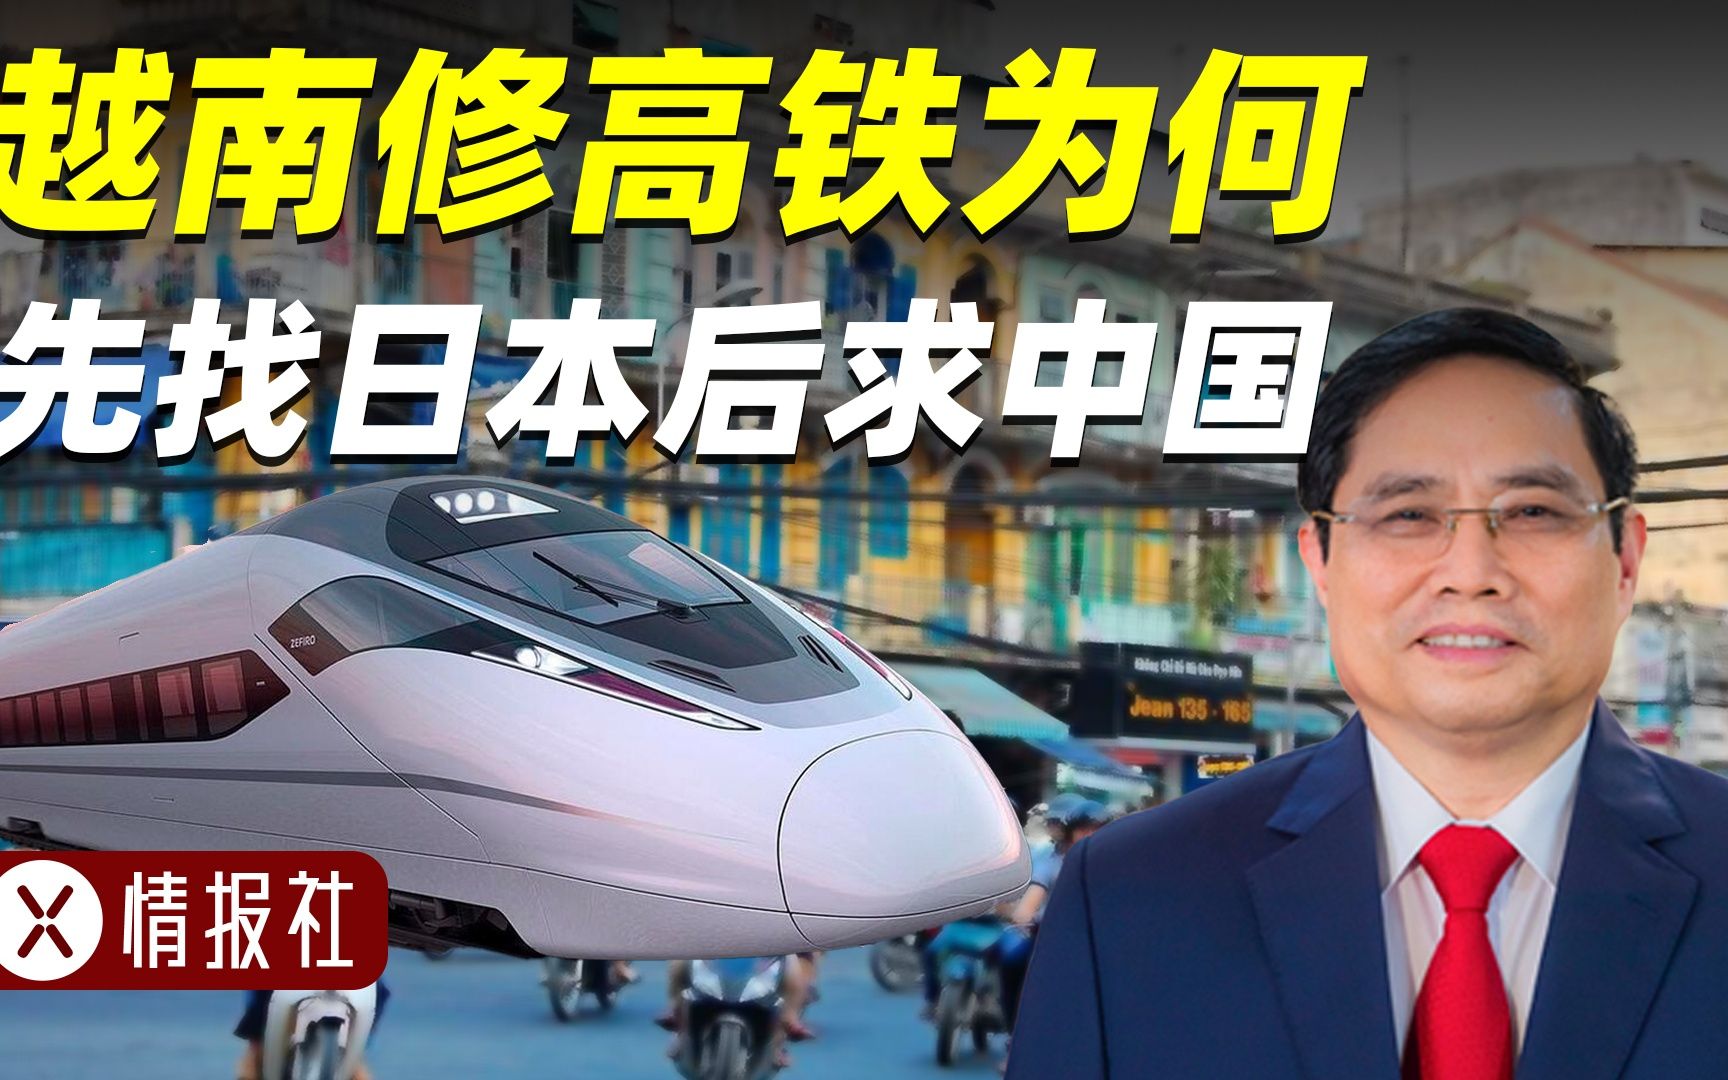 越南找日本修高铁，16年连铁轨都没铺一根，中国会出手吗？